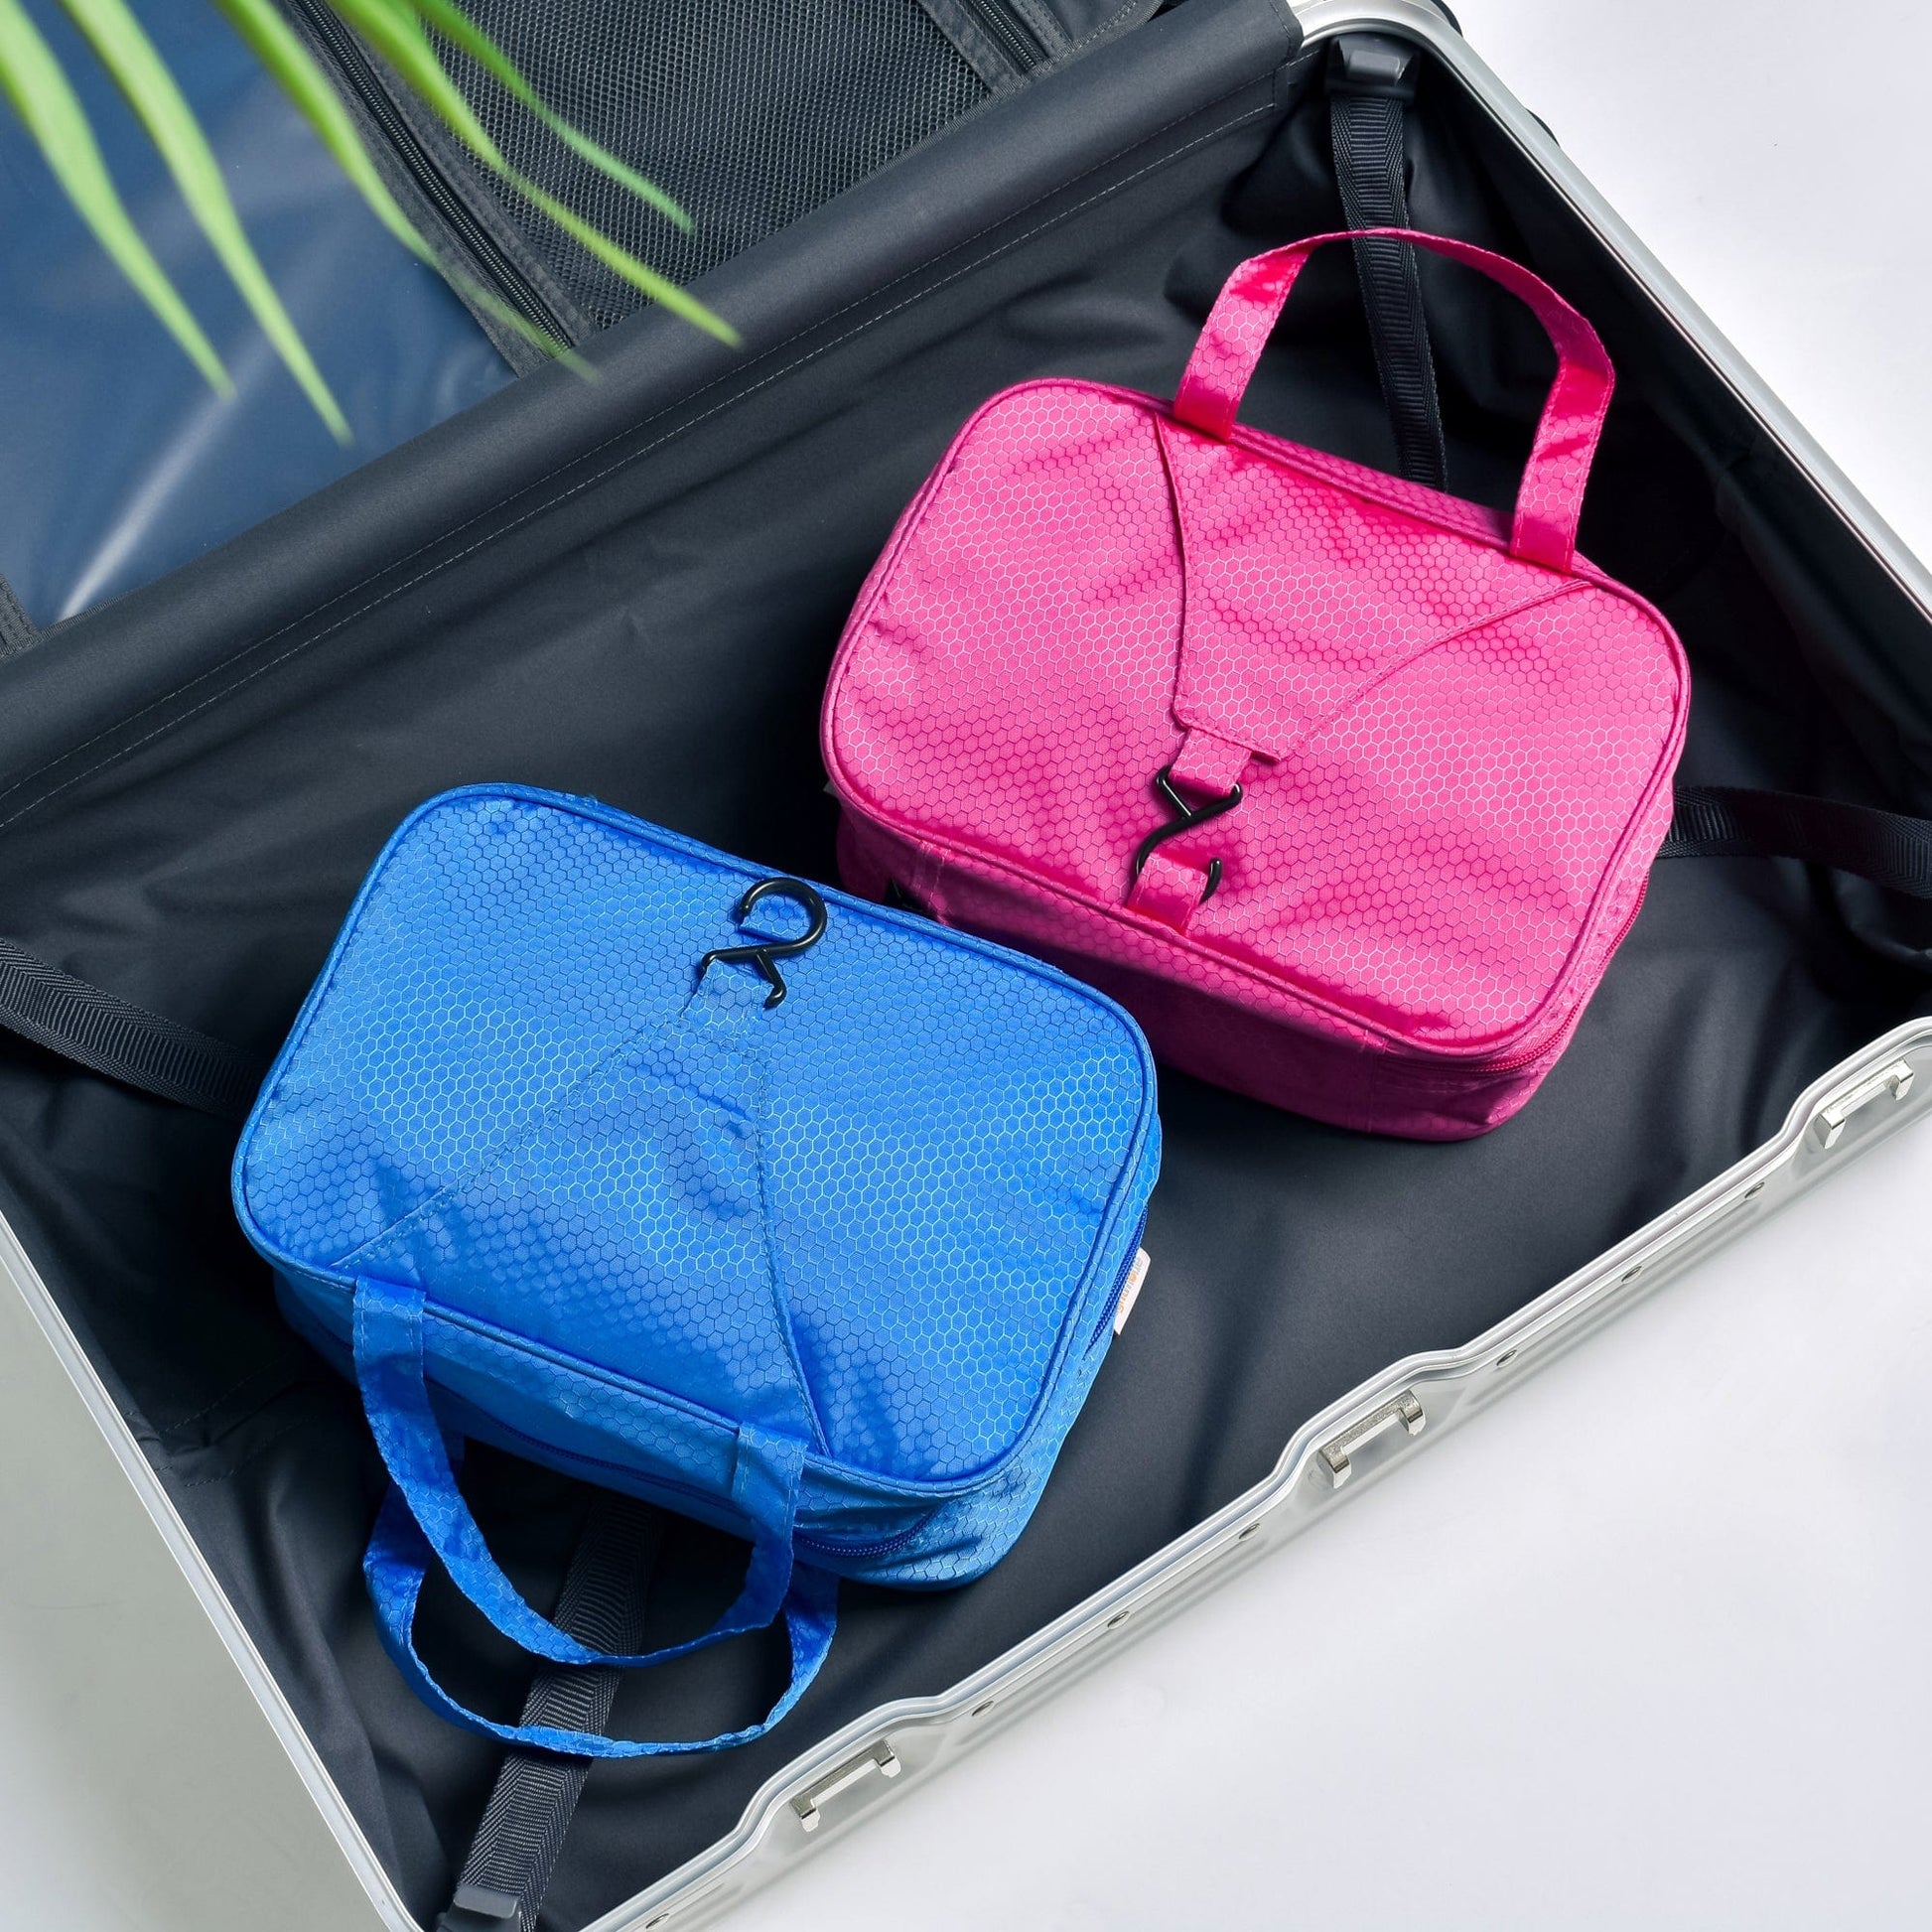 Flightmode toiletry bag Travel Waterproof Hanging Toiletry Bag - Pink